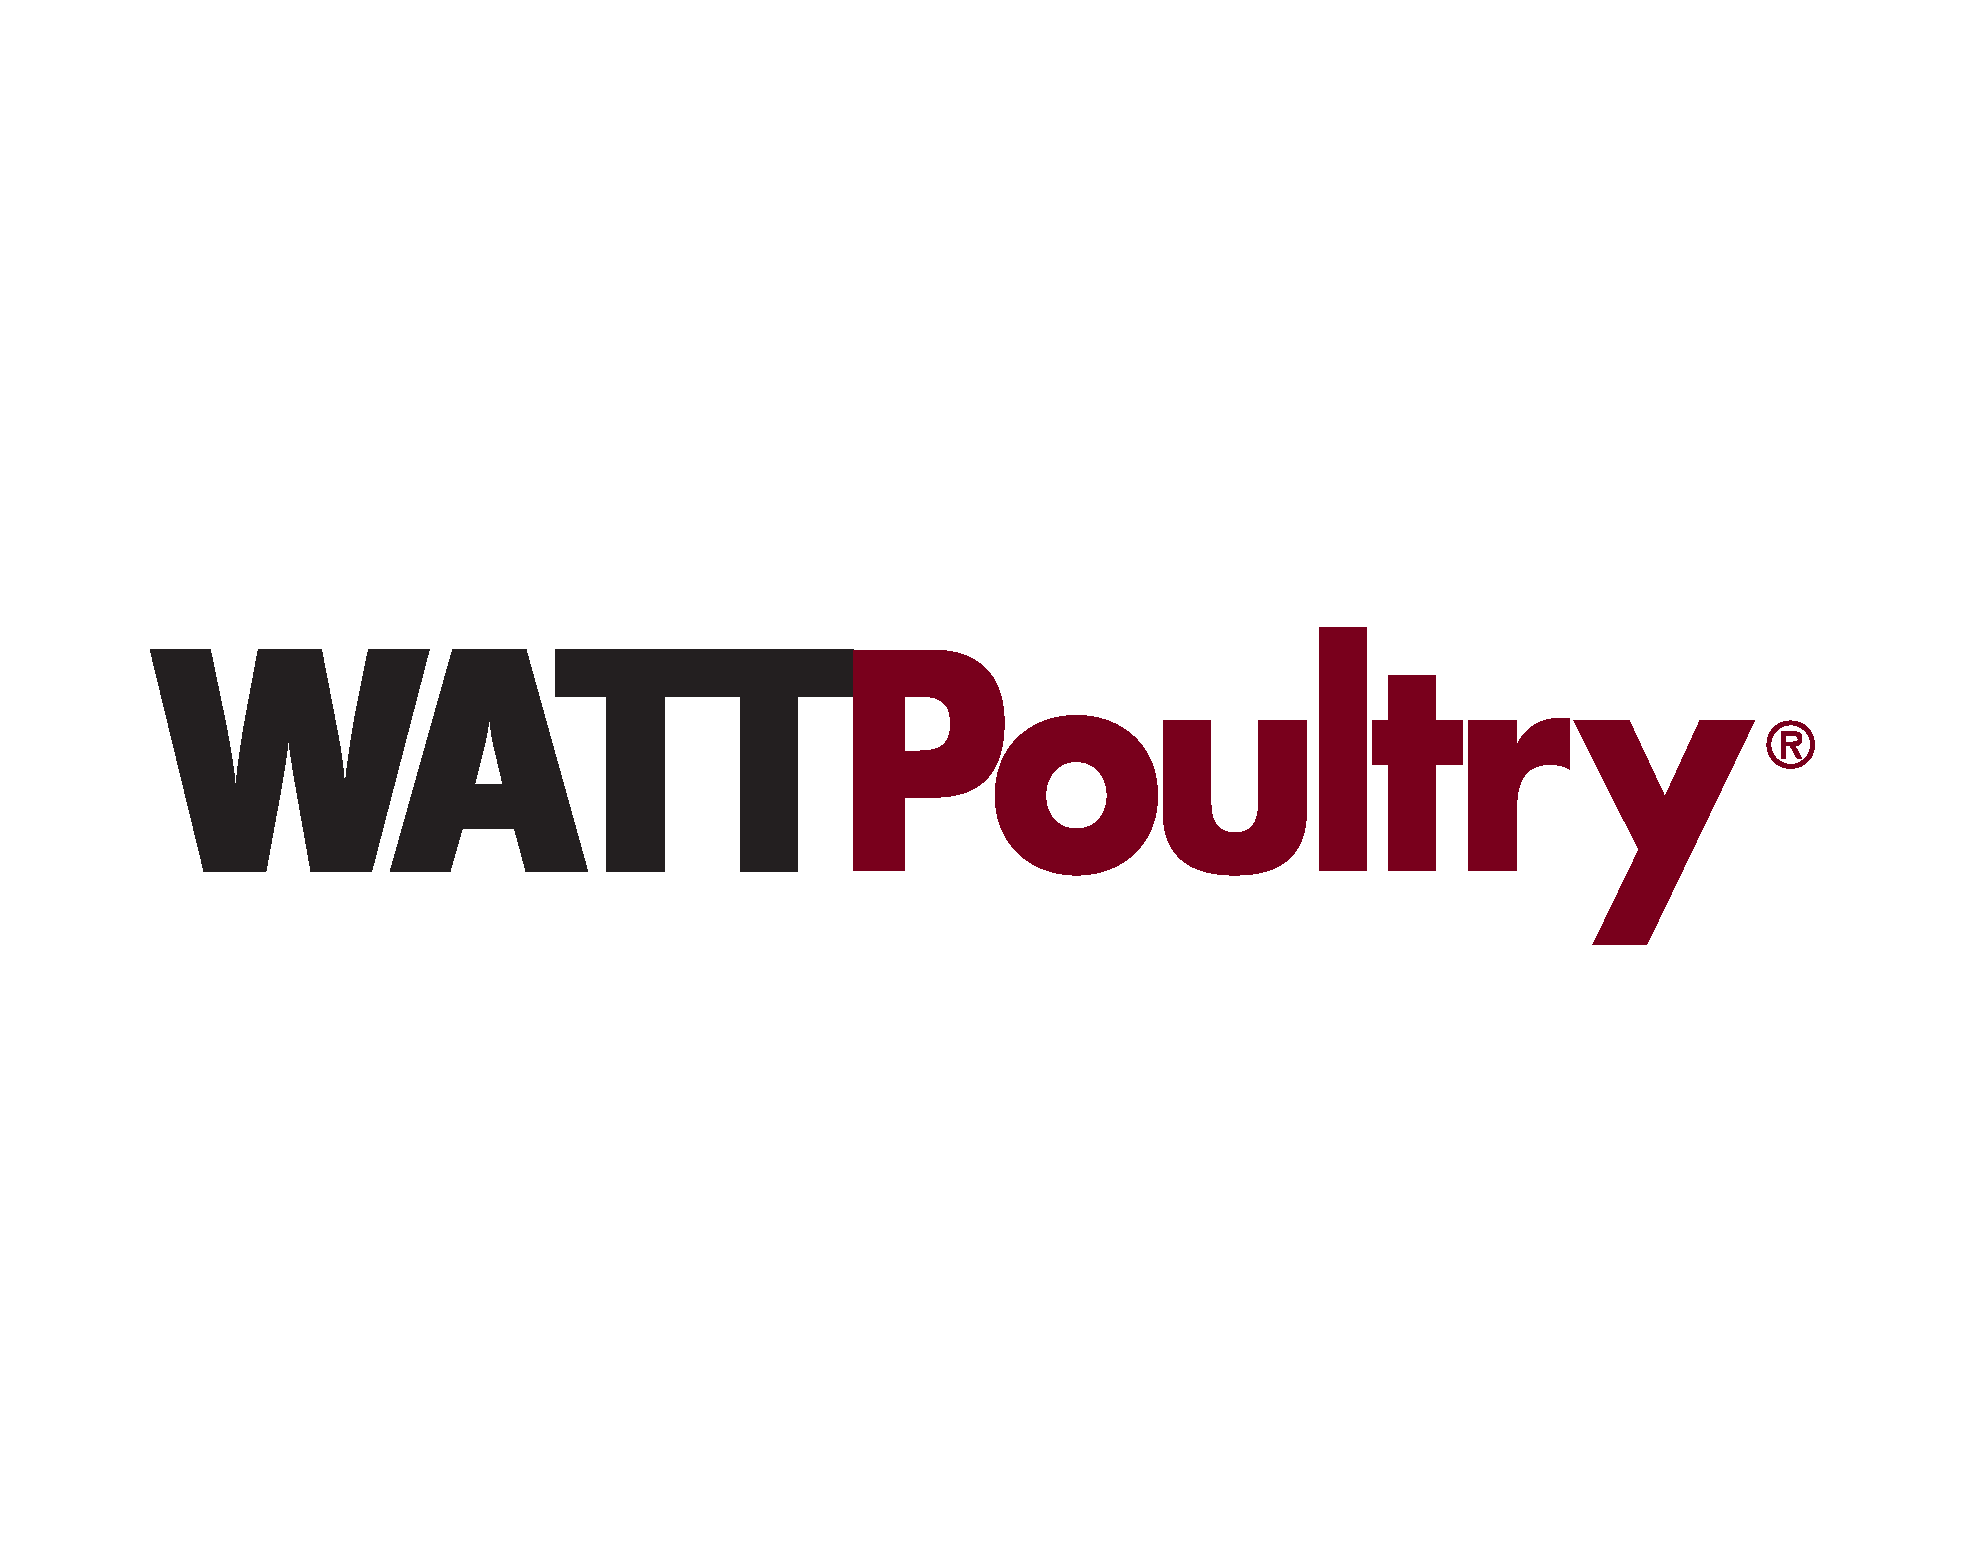 WATT Poultry